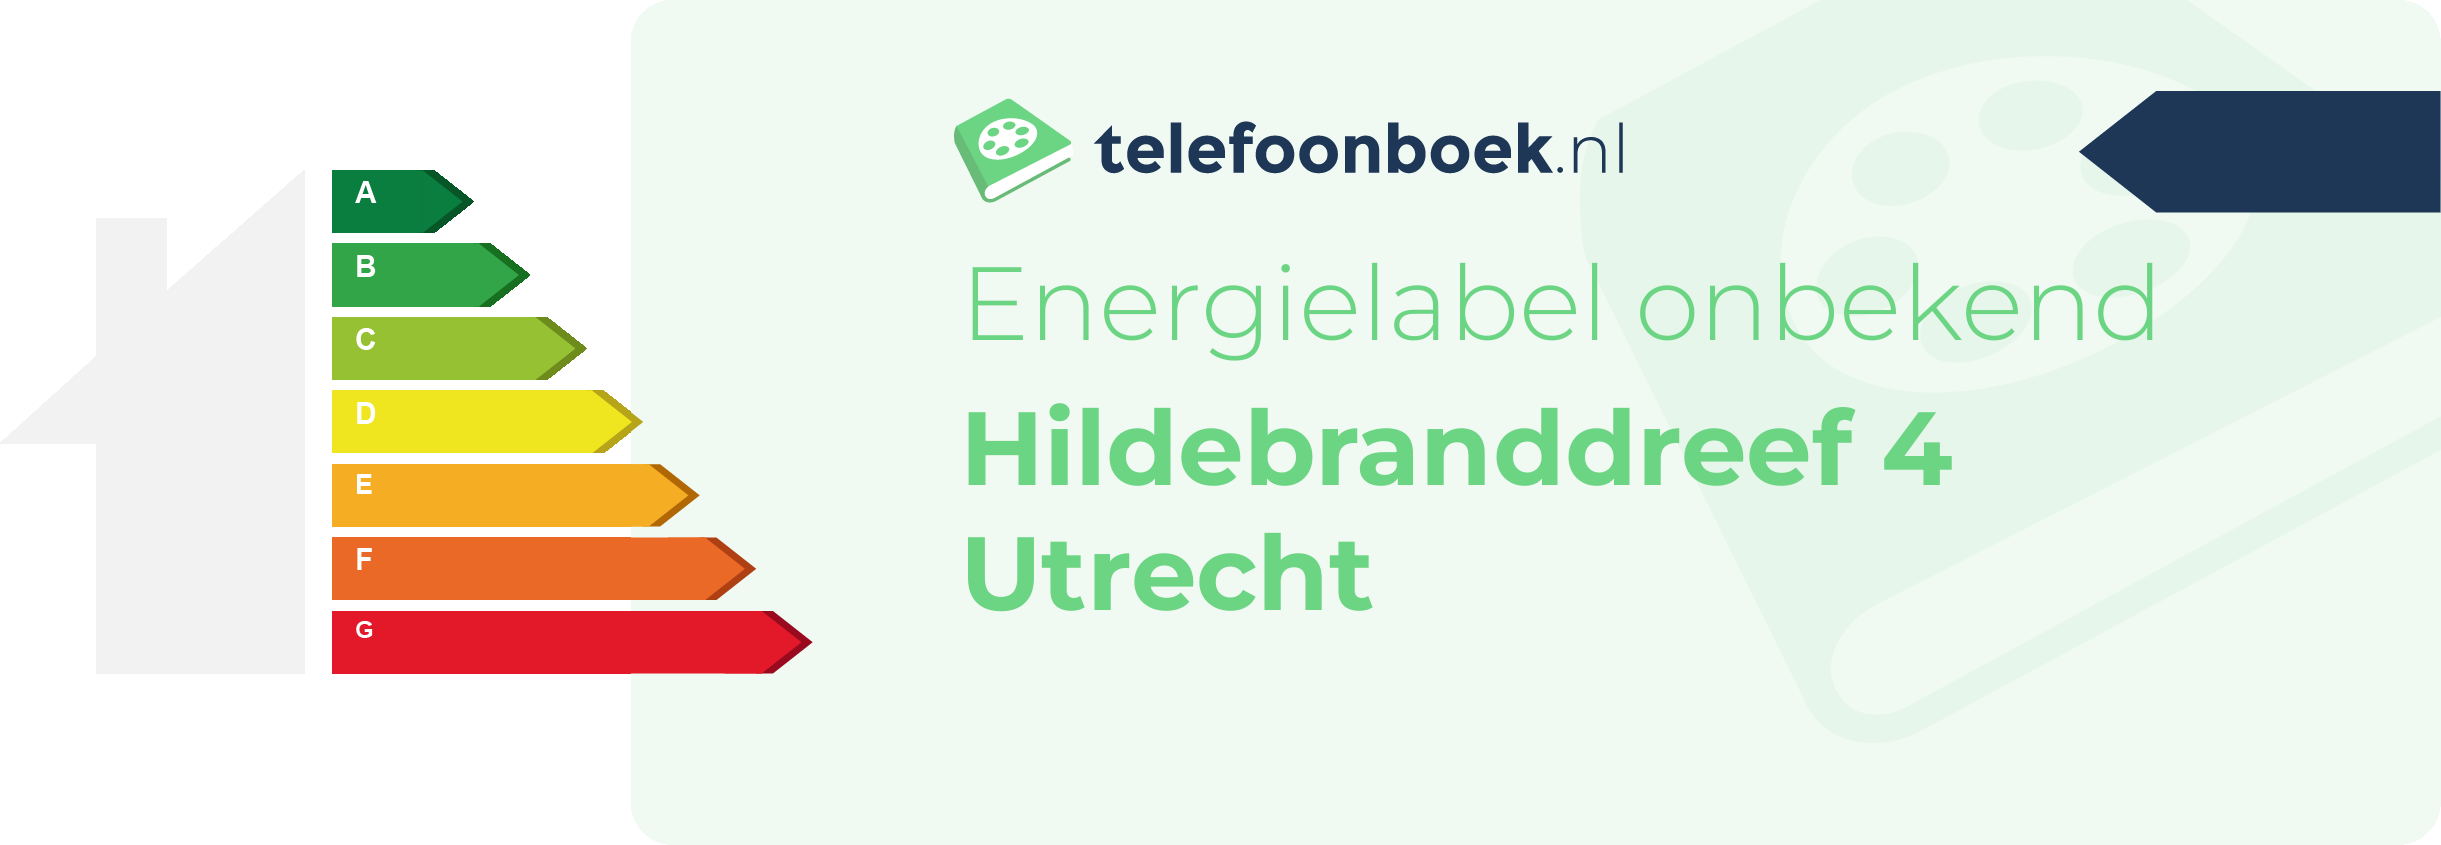 Energielabel Hildebranddreef 4 Utrecht